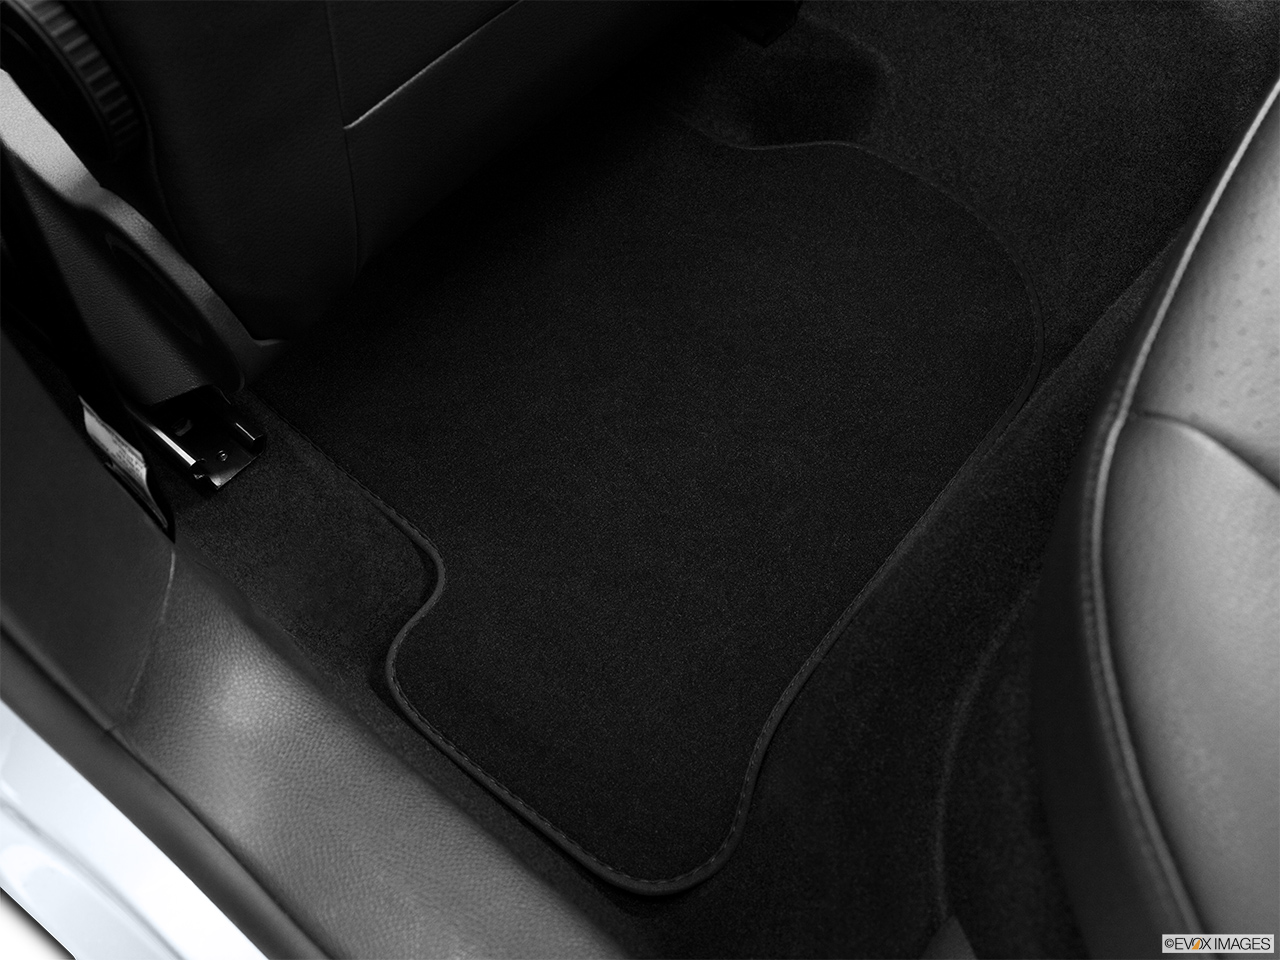 2013 Volkswagen Jetta SportWagen TDI Rear driver's side floor mat. Mid-seat level from outside looking in. 